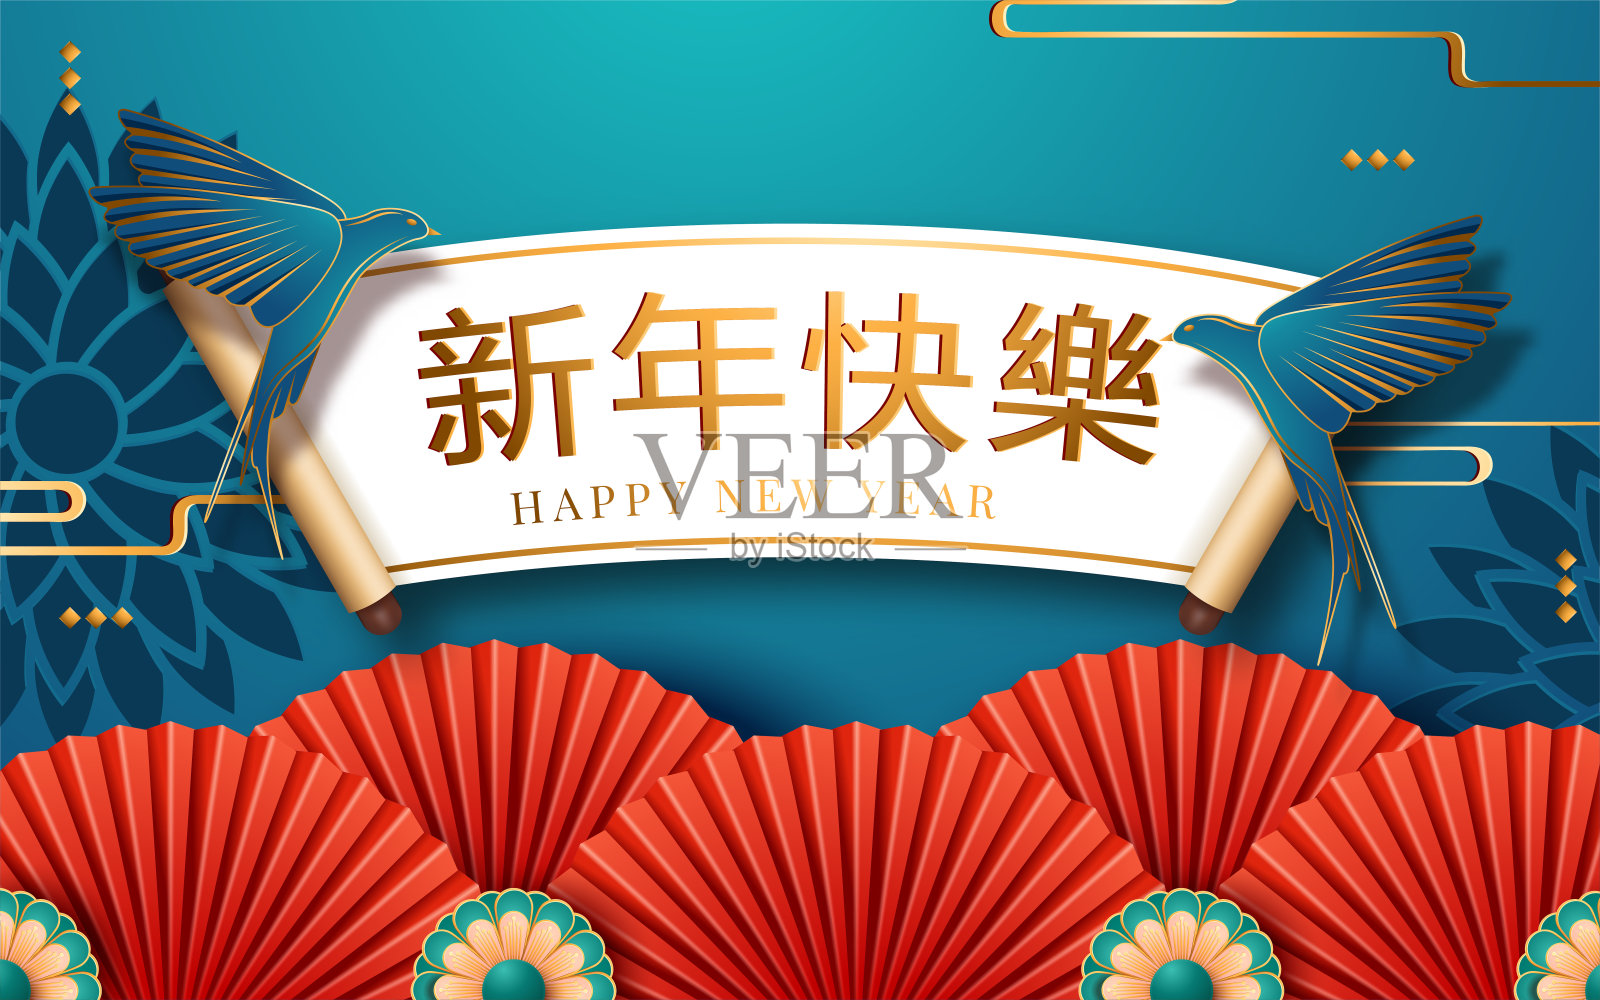 中国挂红灯笼，蓝色背景的纸艺术风格。翻译:新年快乐。矢量图插画图片素材